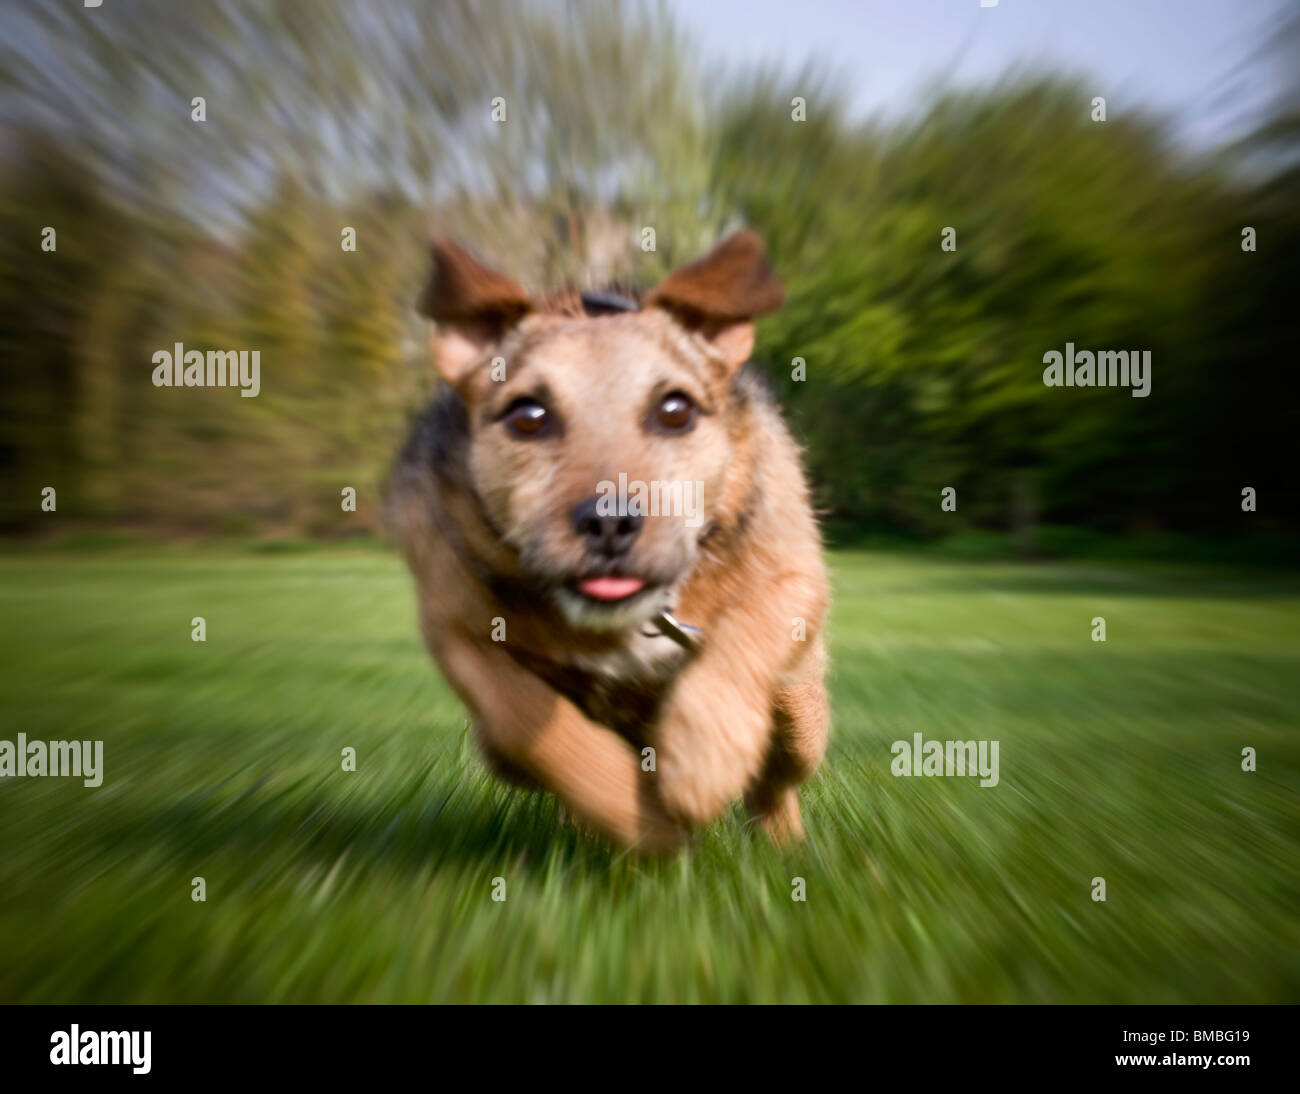 Terrier perro corre a toda velocidad en línea recta a la cámara Foto de stock